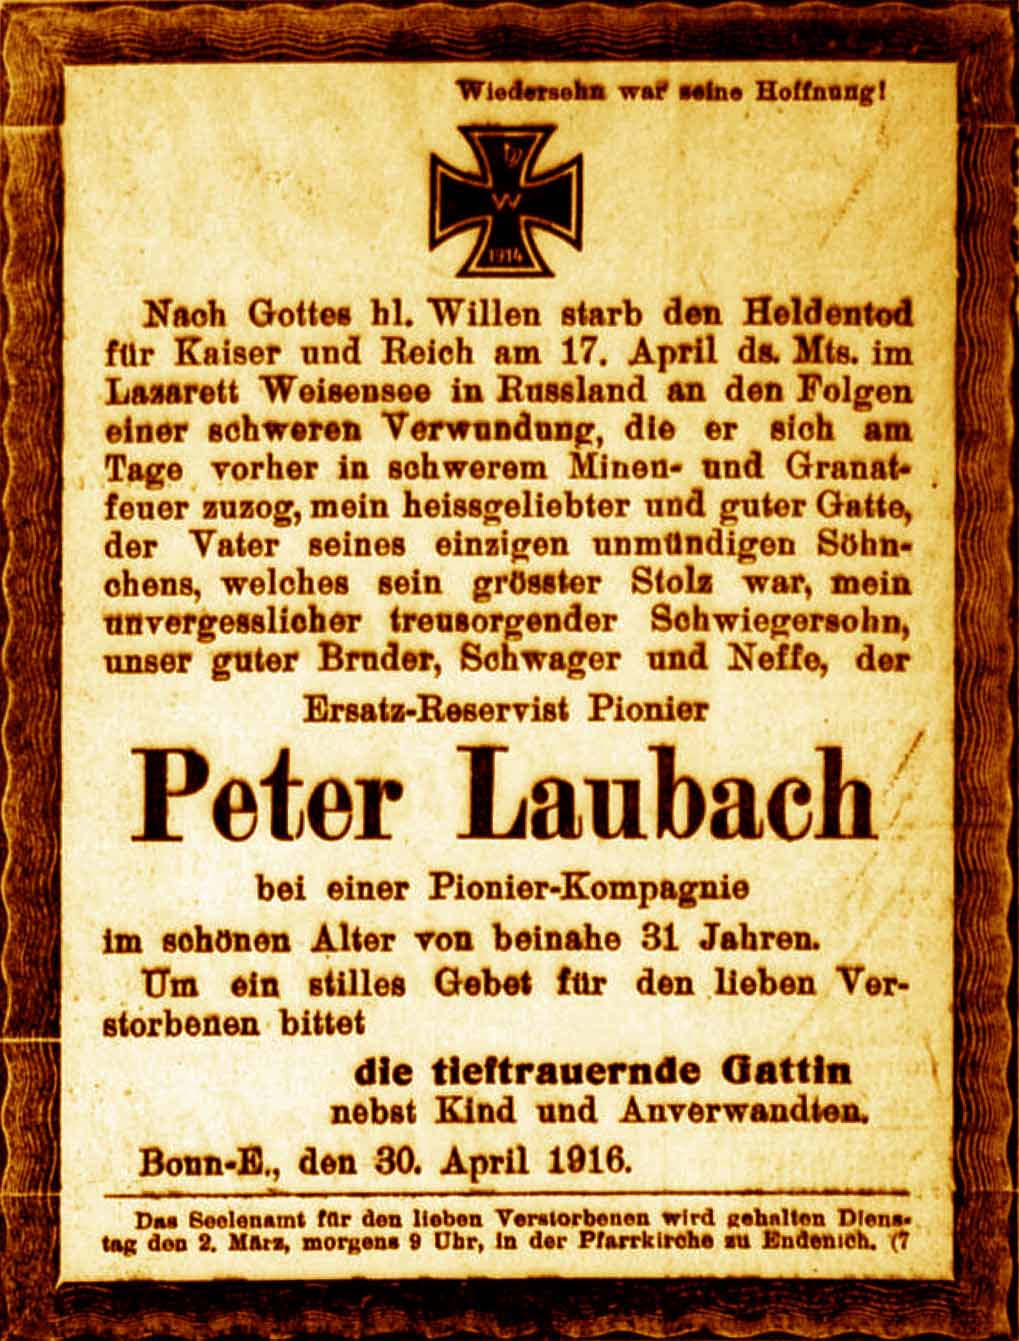 Anzeige im General-Anzeiger vom 30. April 1916